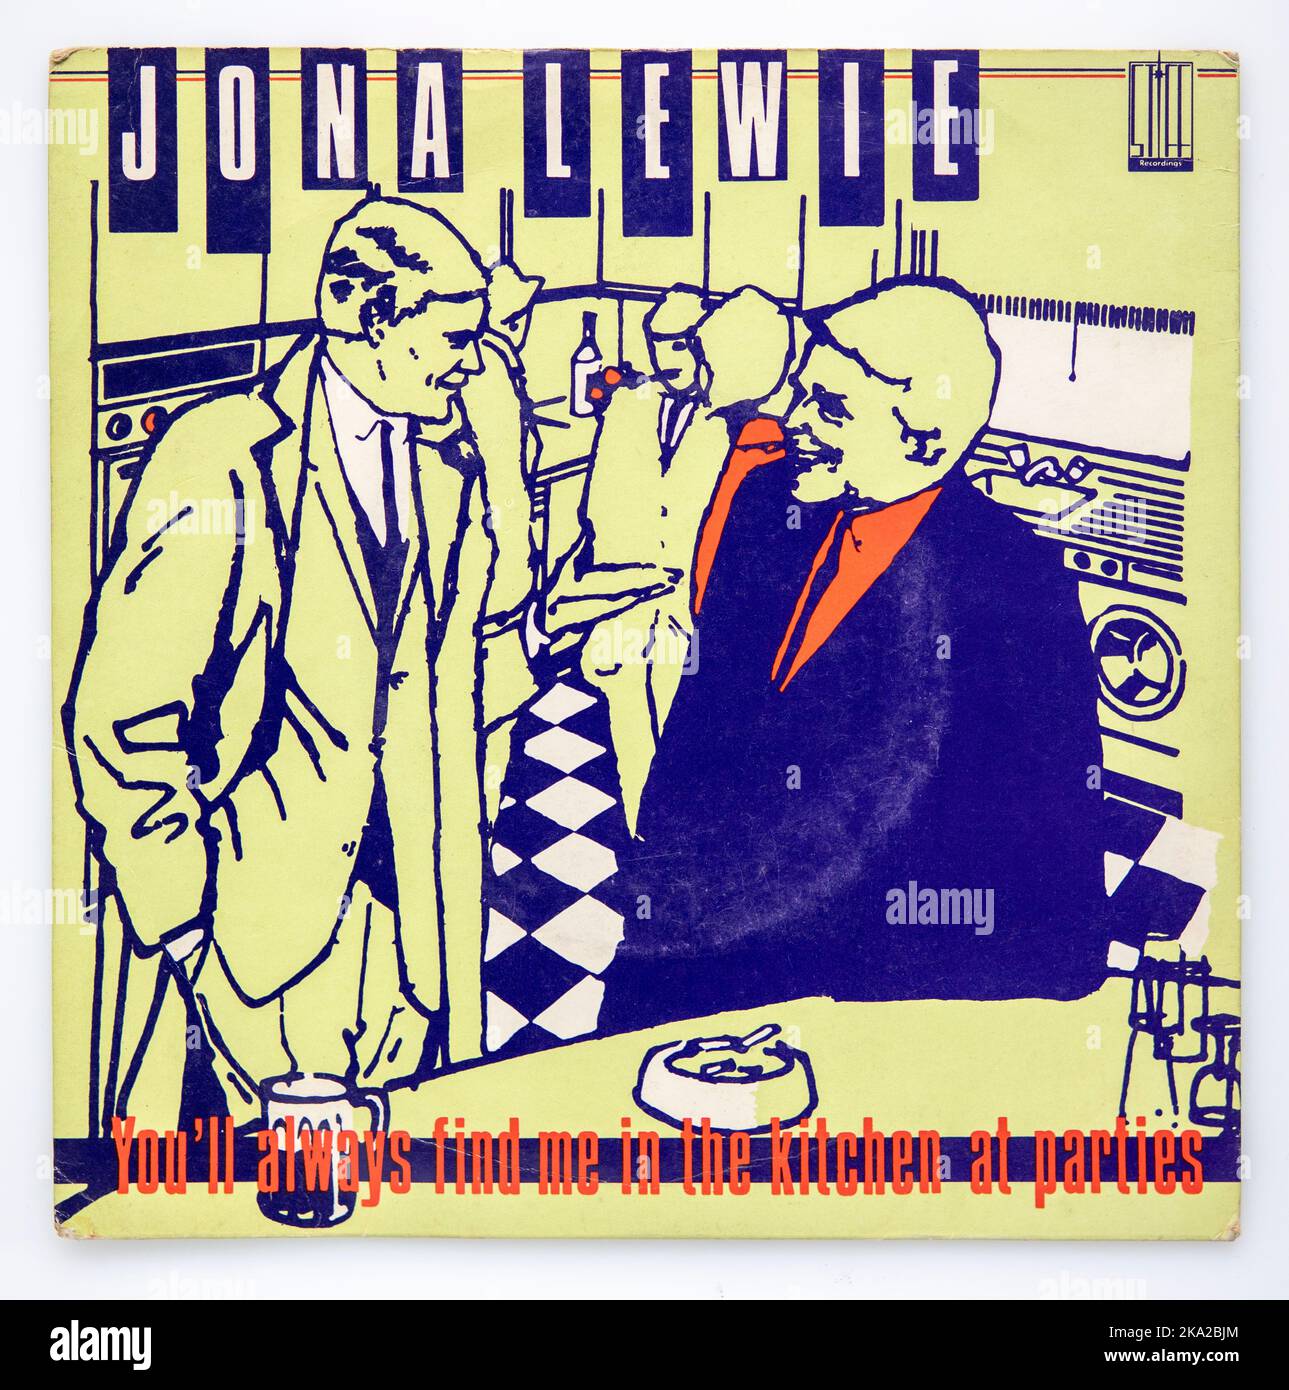 Copertina in vinile da sette pollici del singolo You'll Always Find Me in the Kitchen at Parties di Jona Lewie, uscito nel 1980 Foto Stock